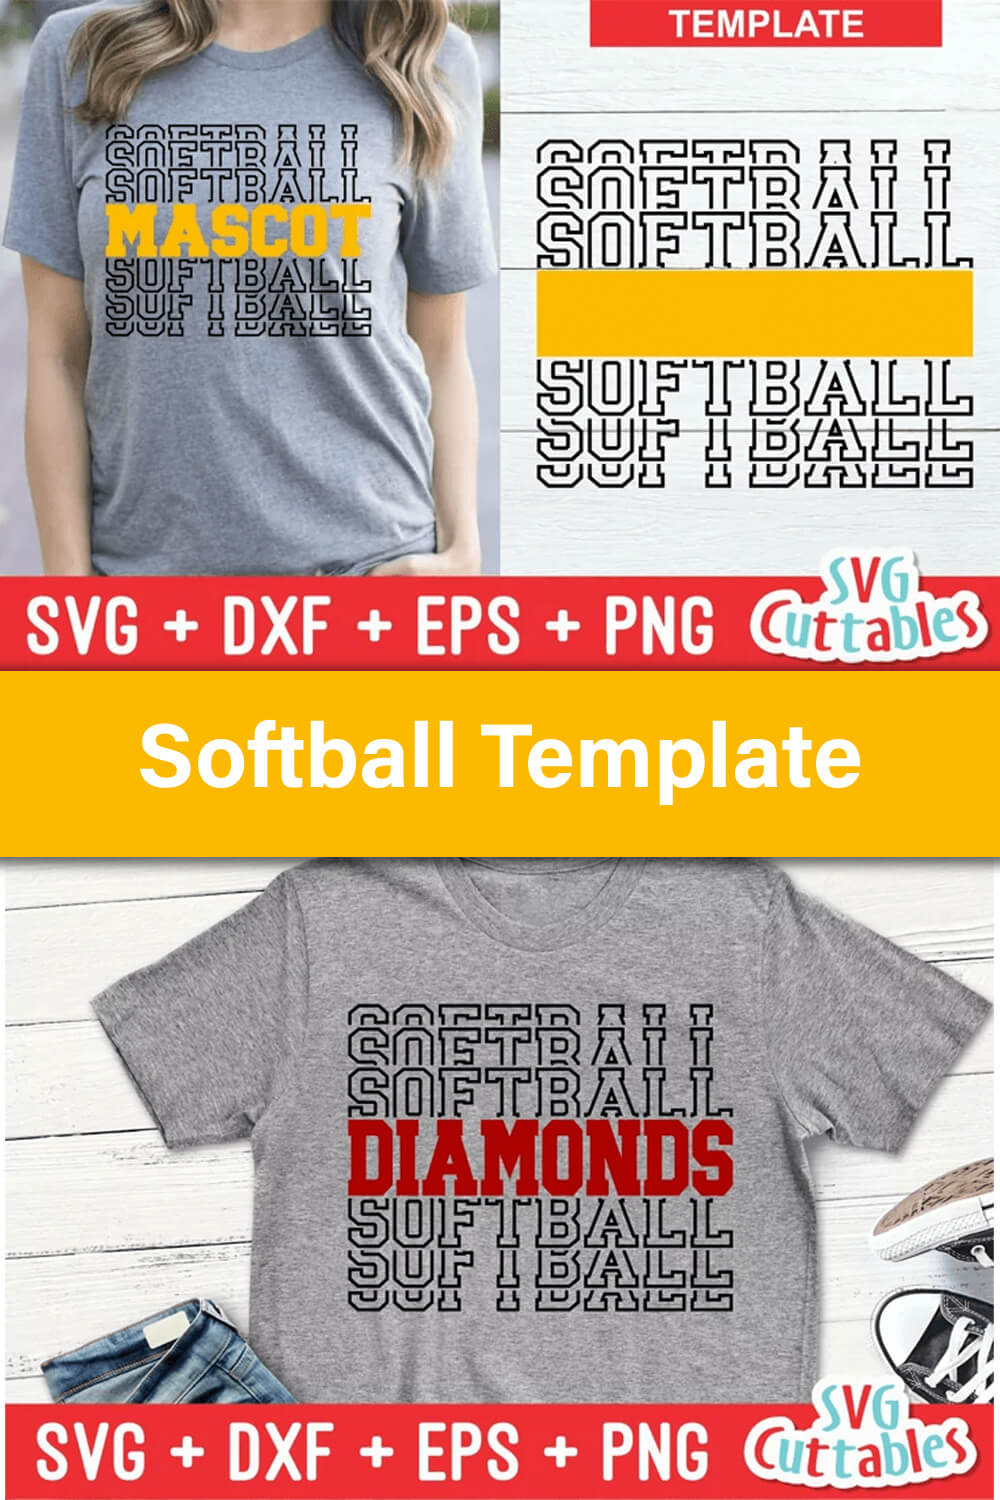 Incredible softball t-shirt design.